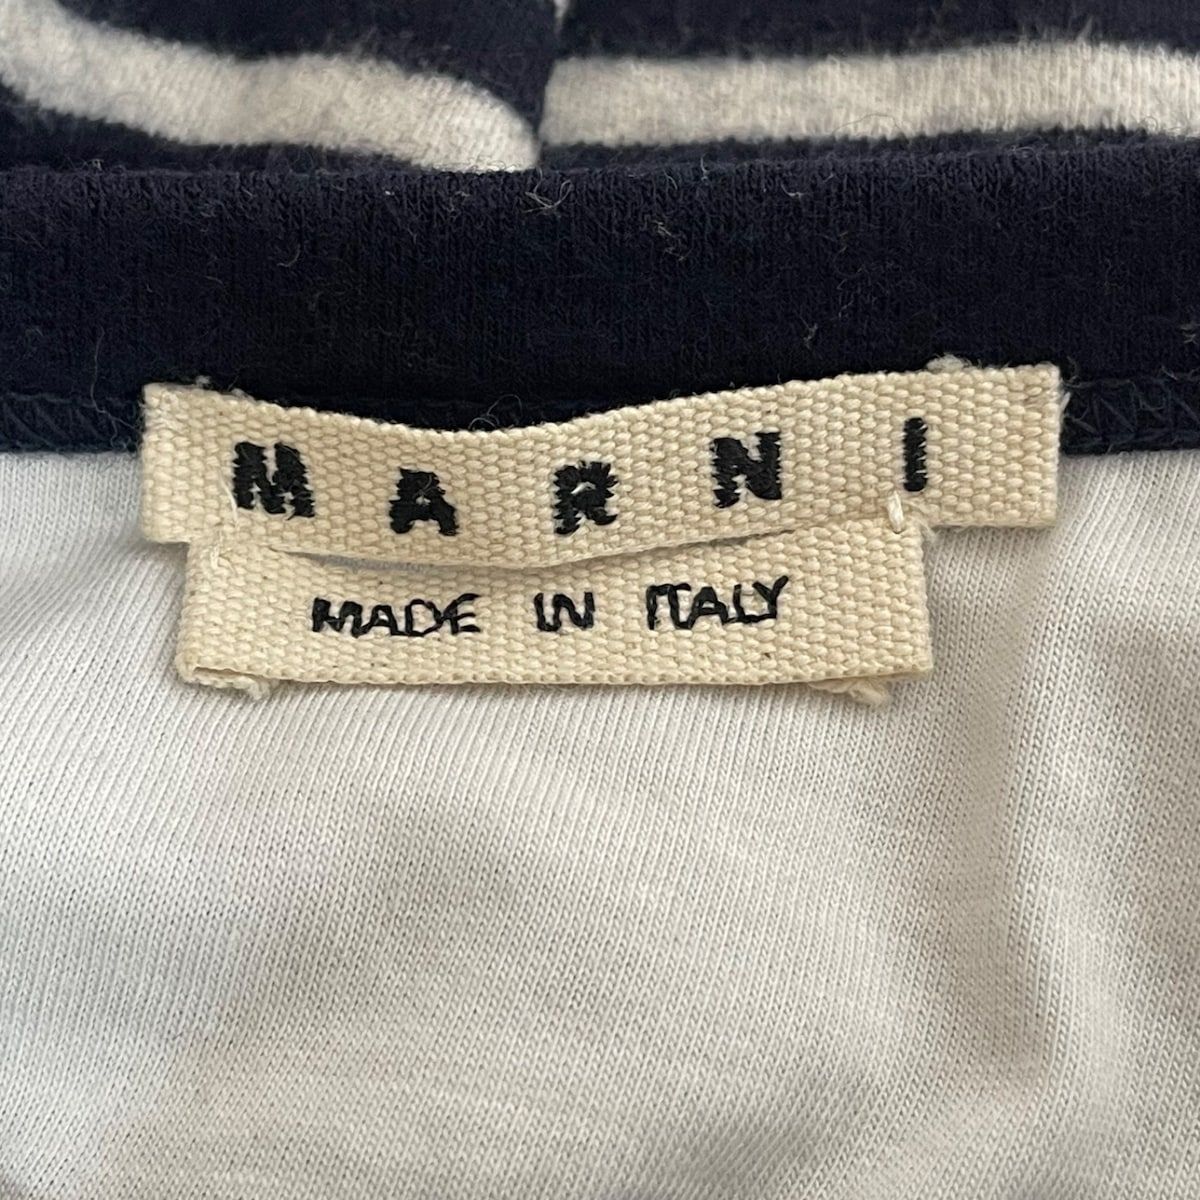 MARNI(マルニ) 長袖セーター サイズ46 L レディース - 白×黒 ボーダー/ダメージ加工 - メルカリ